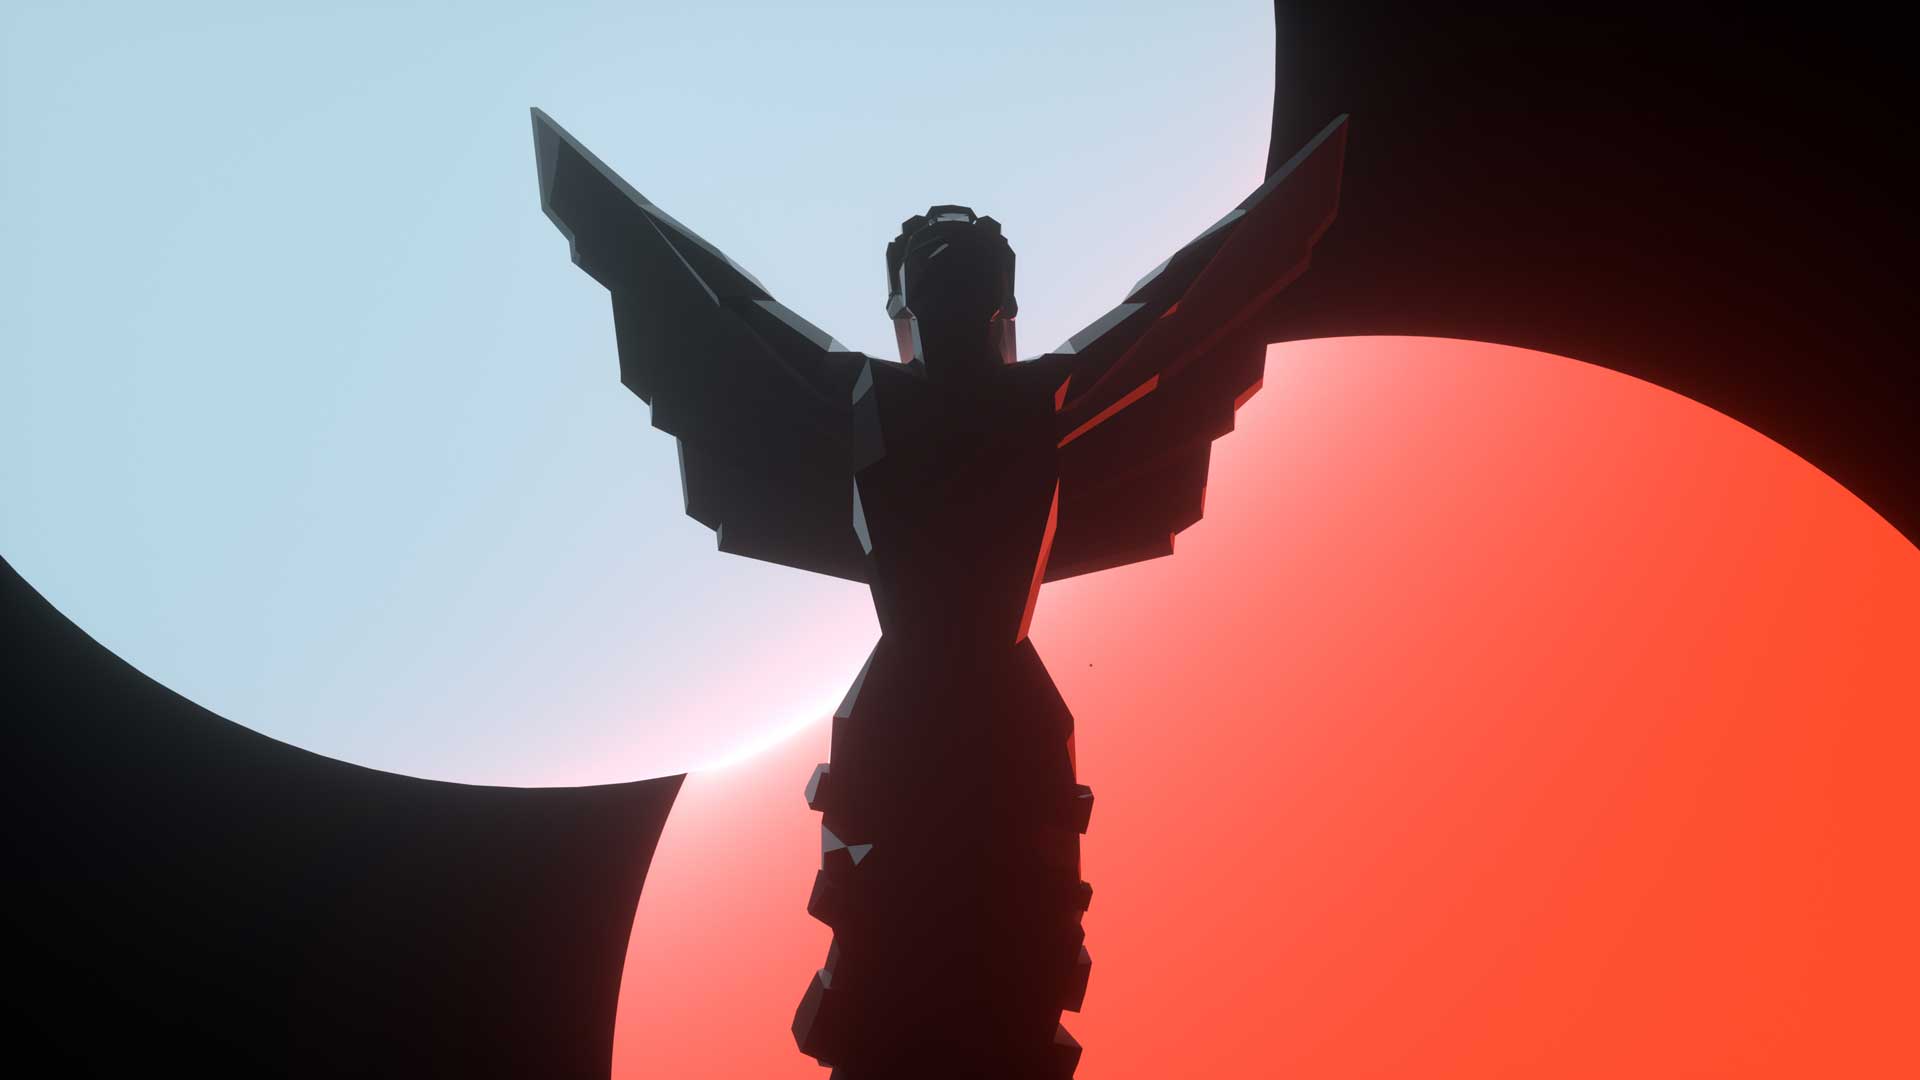 مجسمه زیبا گیم اواردز مقابل نورهای آبی و قرمز در مراسم The Game Awards 2020 جف کیلی